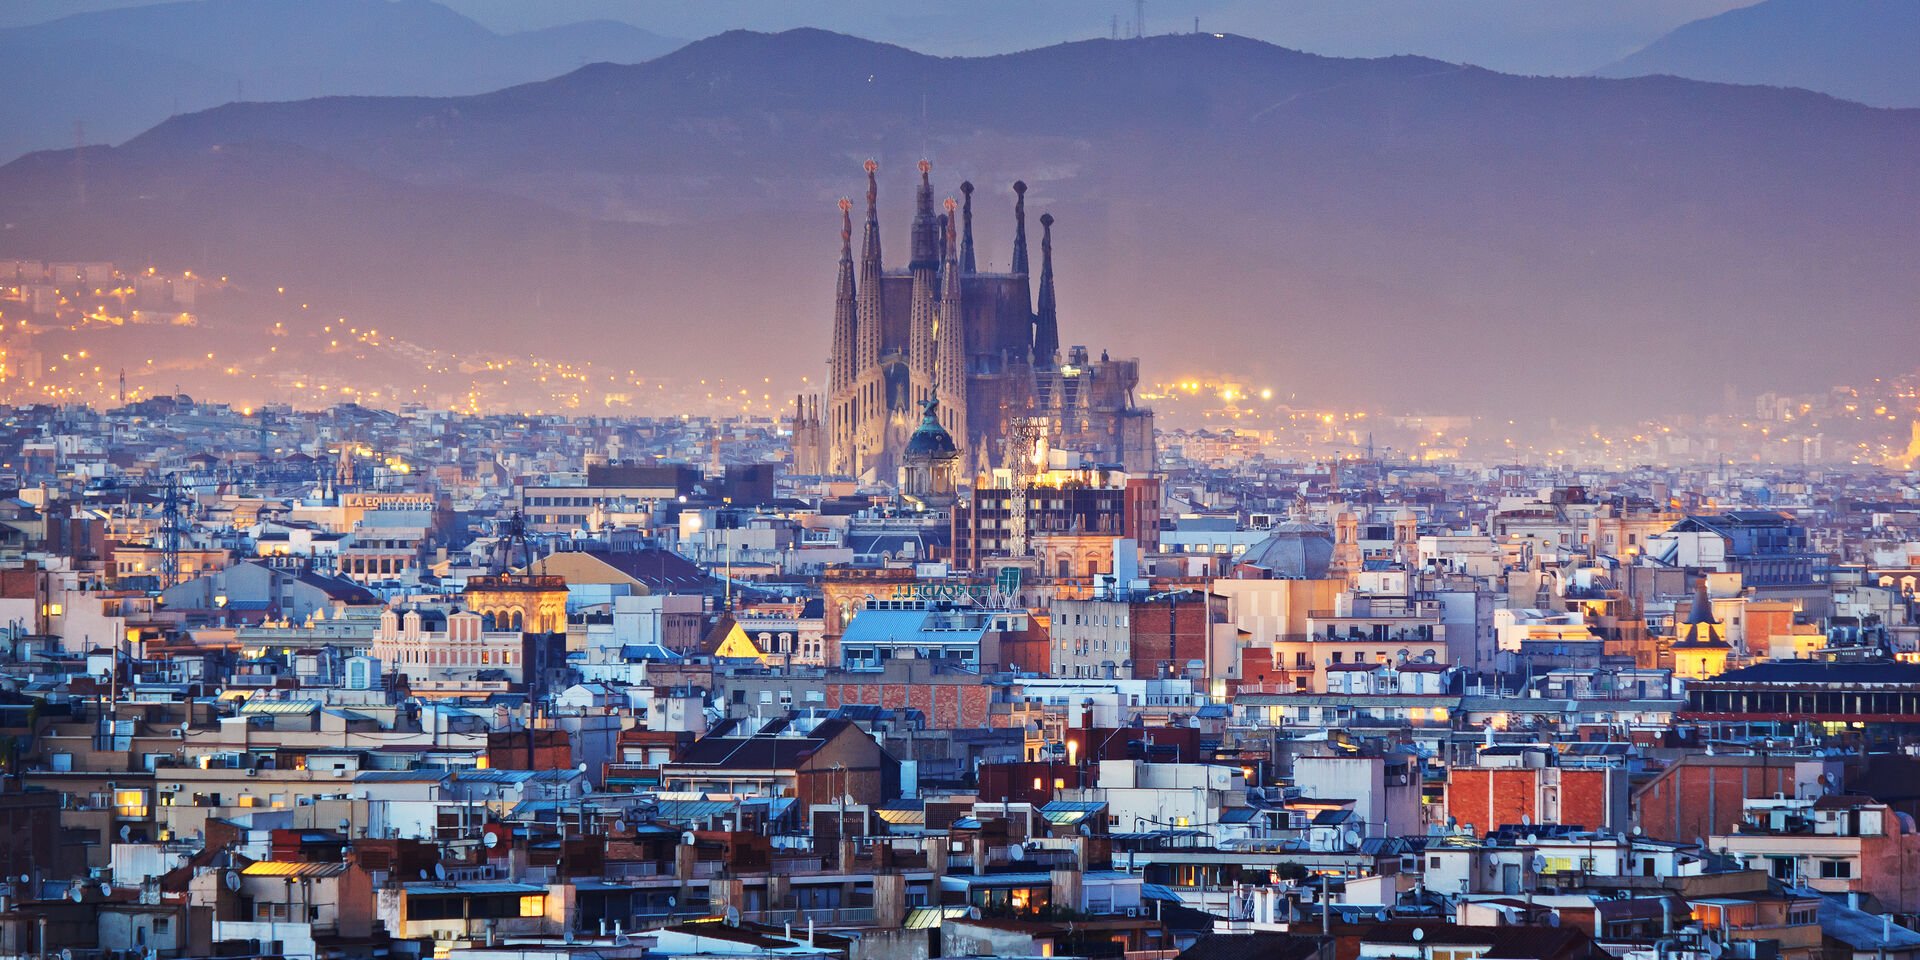 L'hotel 5 estrelles de Barcelona amb una puntuació de 9,7 a Booking: "El paradís és al Tibidabo"